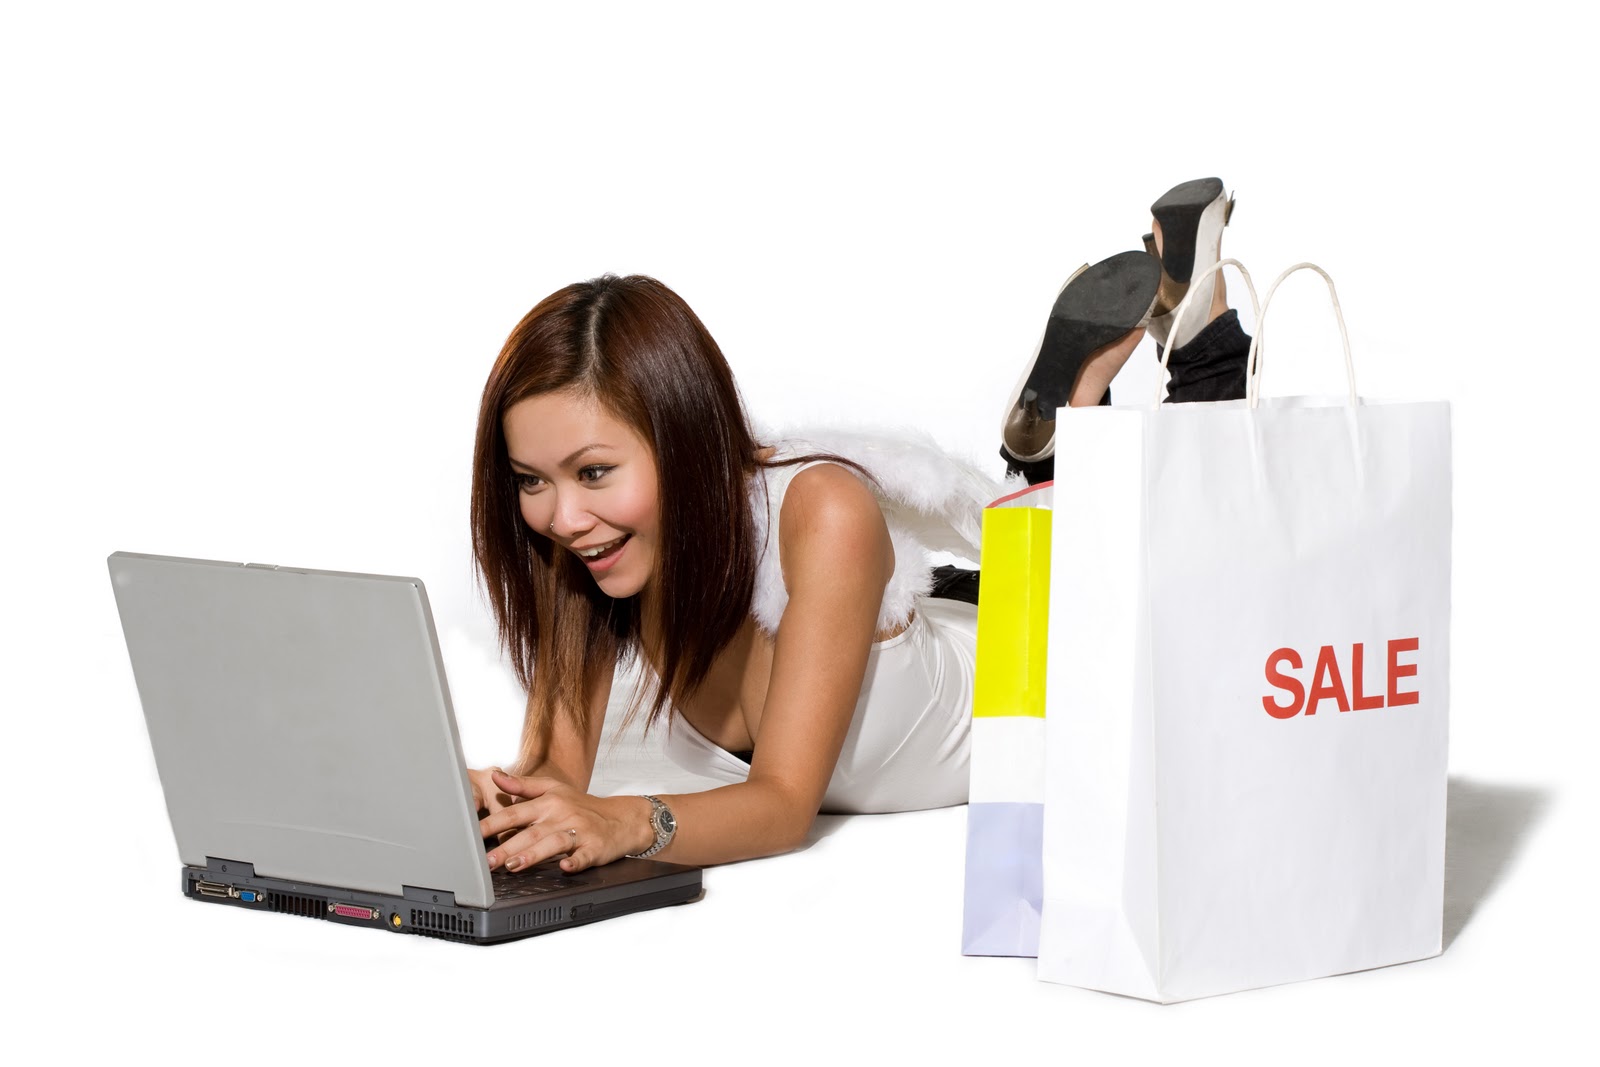 Заказ клиента реализация. Покупки в интернете. Человек заказывает в интернете. Картинки для интернет магазина. Интернет шоппинг.